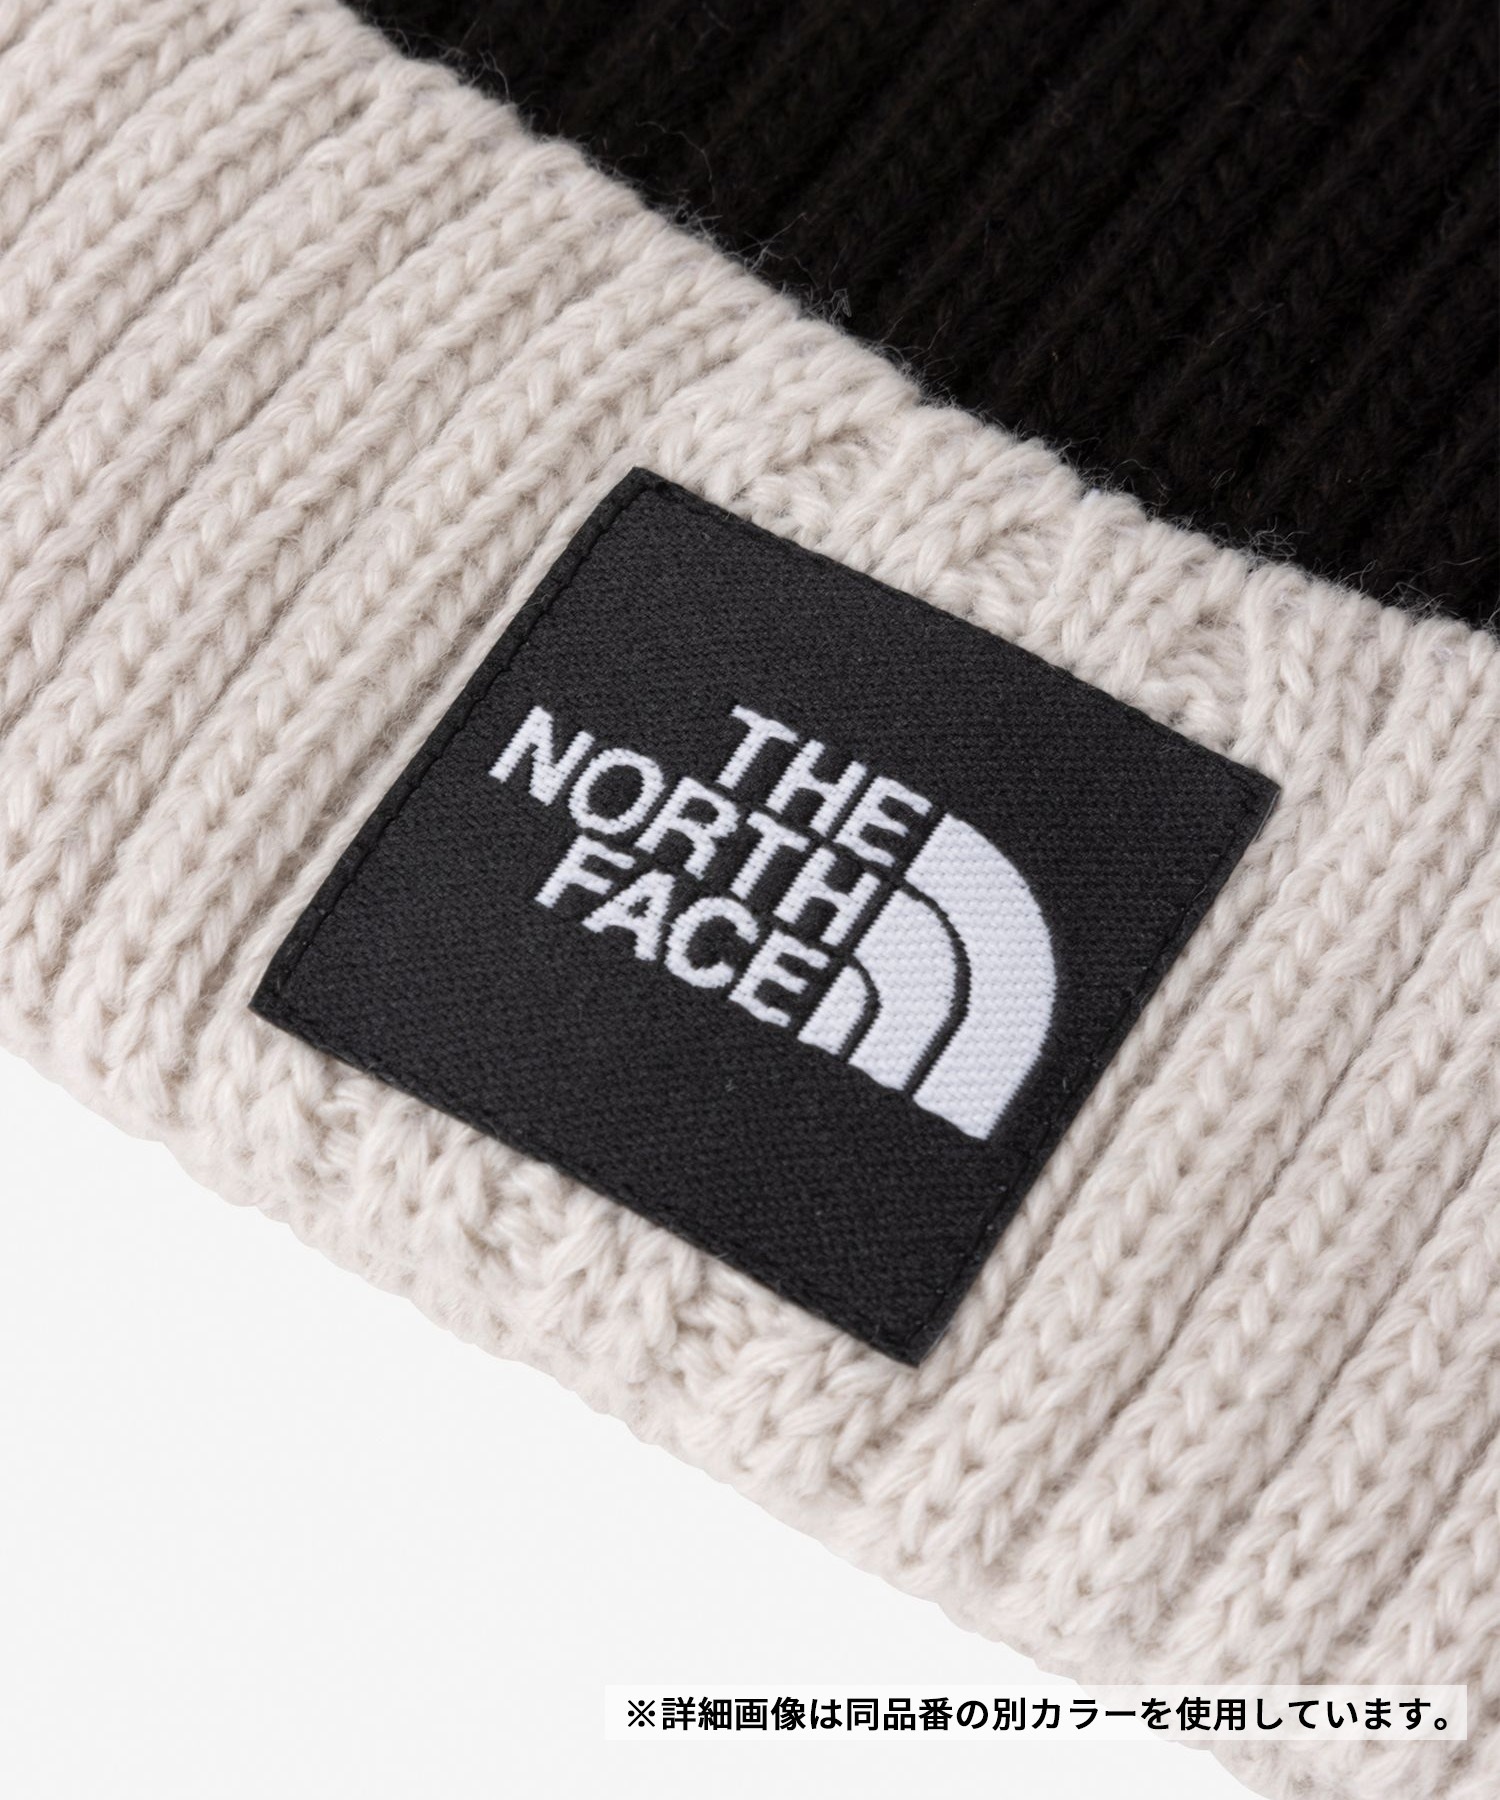 THE NORTH FACE/ザ・ノース・フェイス ポンポンカプッチョ キッズ ニットキャップ ビーニー 帽子 ユーティリティブラウン NNJ42307 UB(UB-FREE)